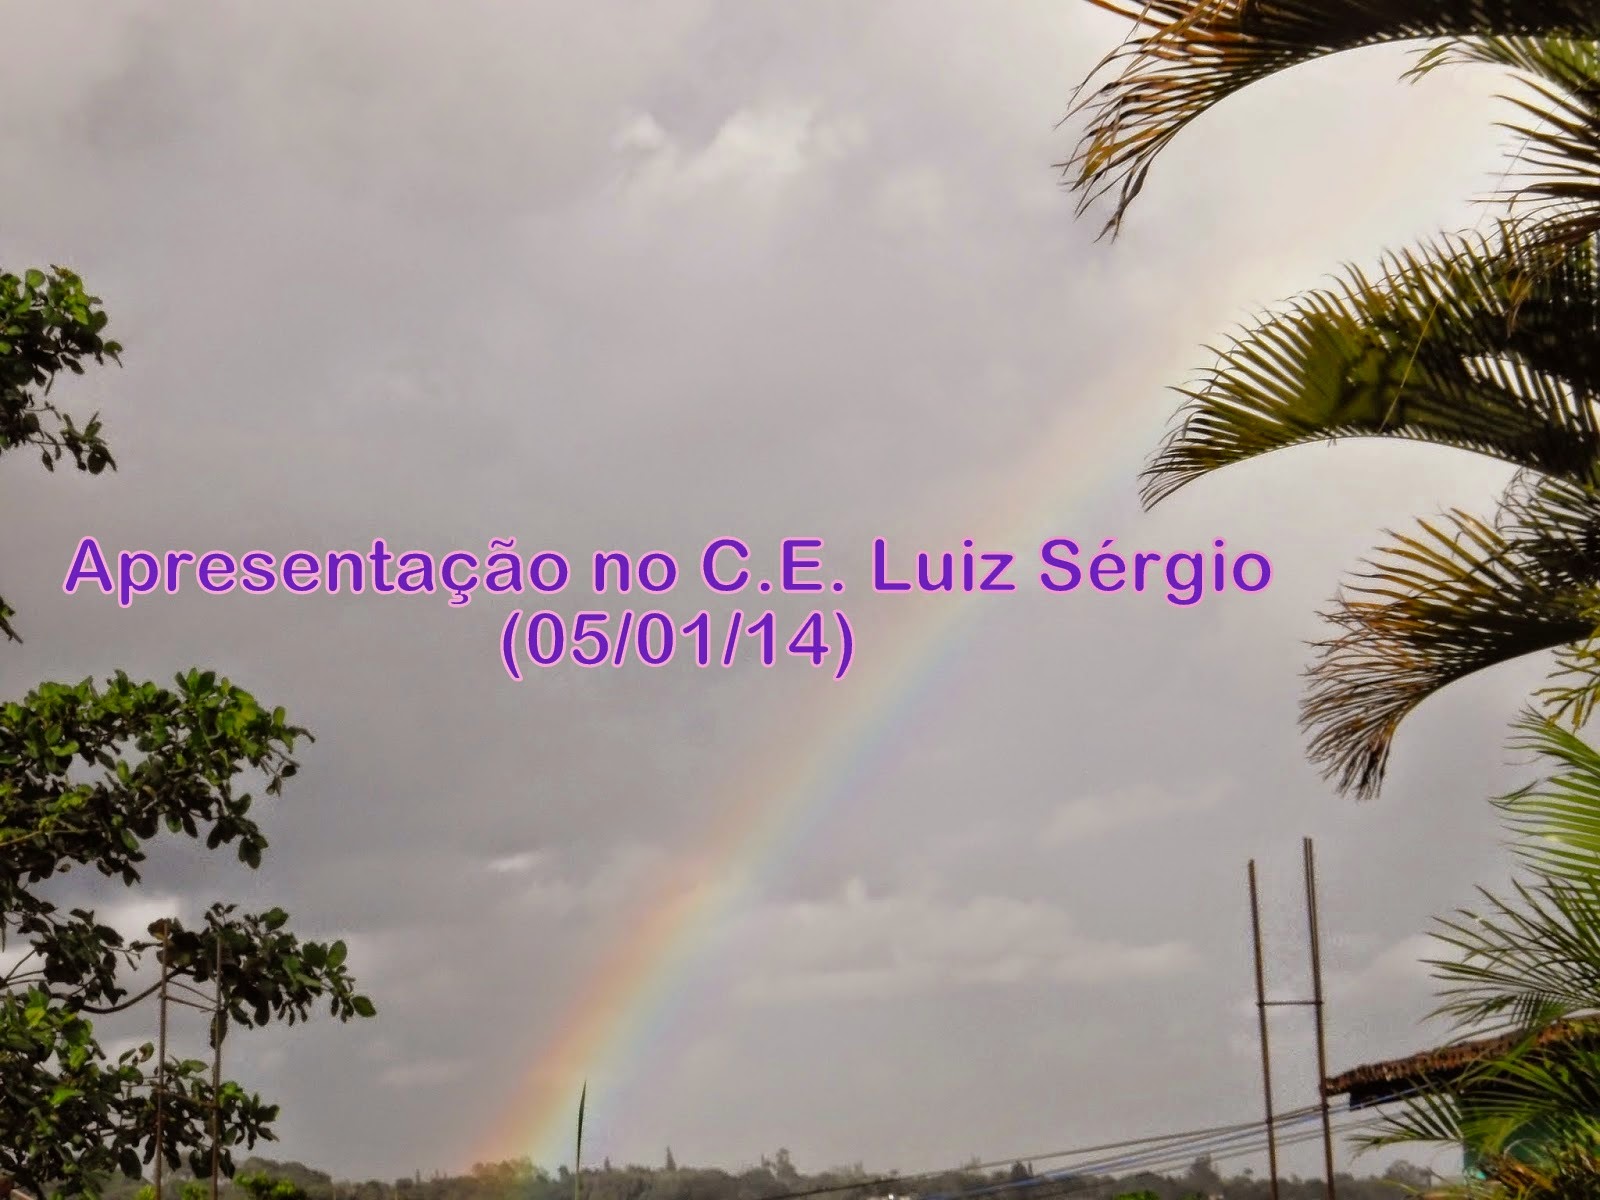  http://coralaccordis.blogspot.com.br/2014/06/apresentacao-no-ce-luiz-sergio.html